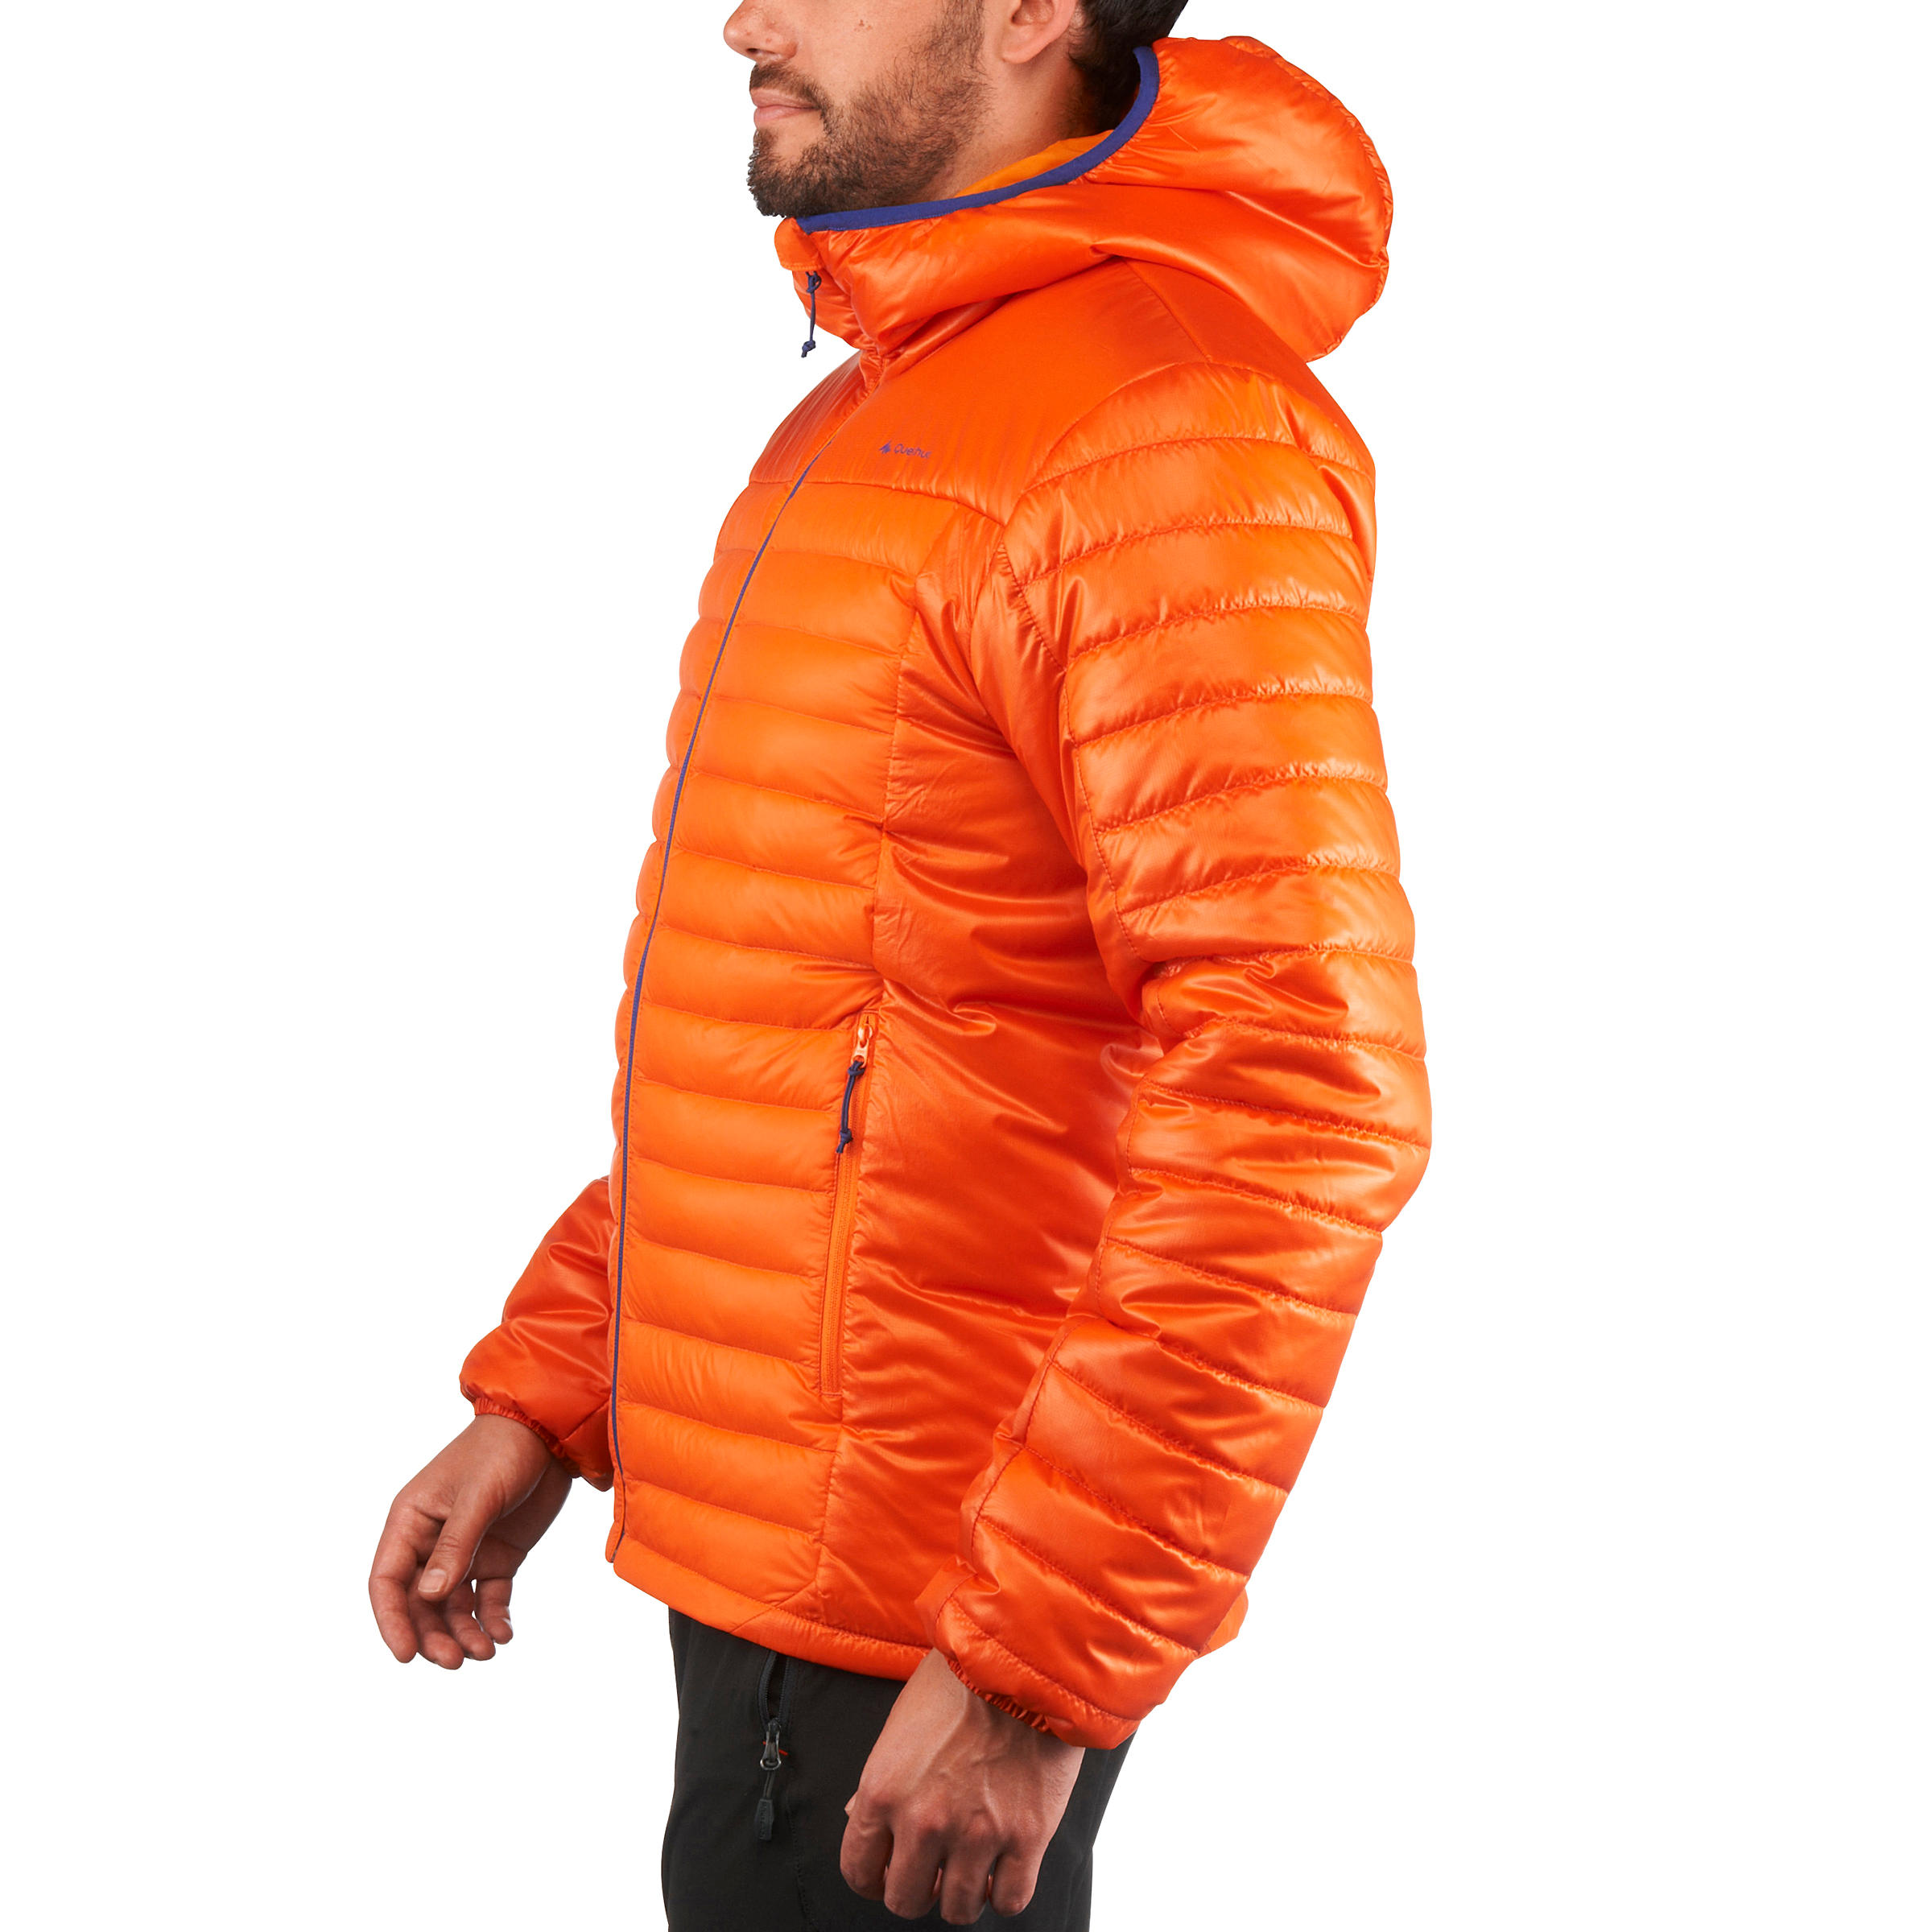 X-Light1 Men's Padded Hiking Jacket - Orange 16/17